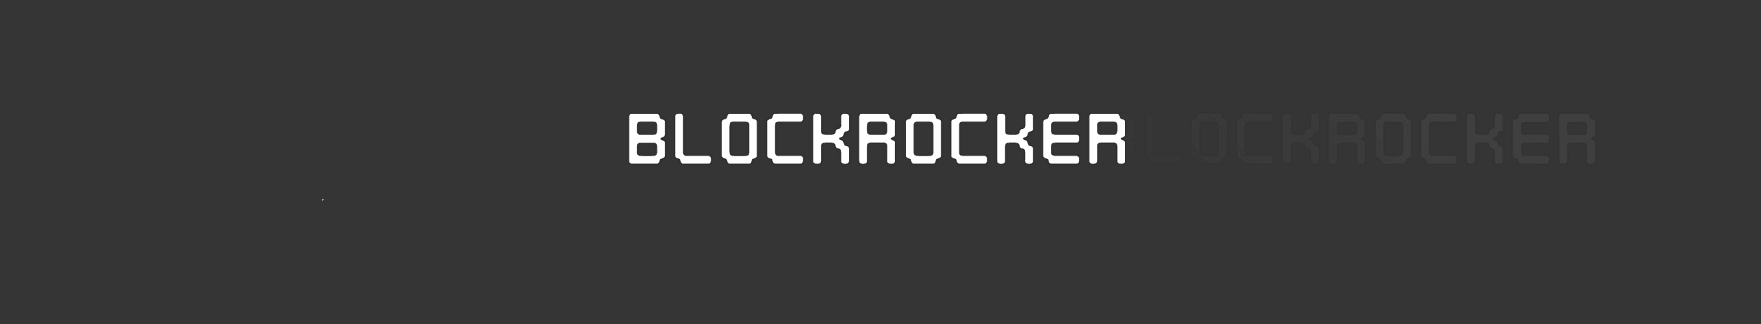 Blockrocker 橫幅